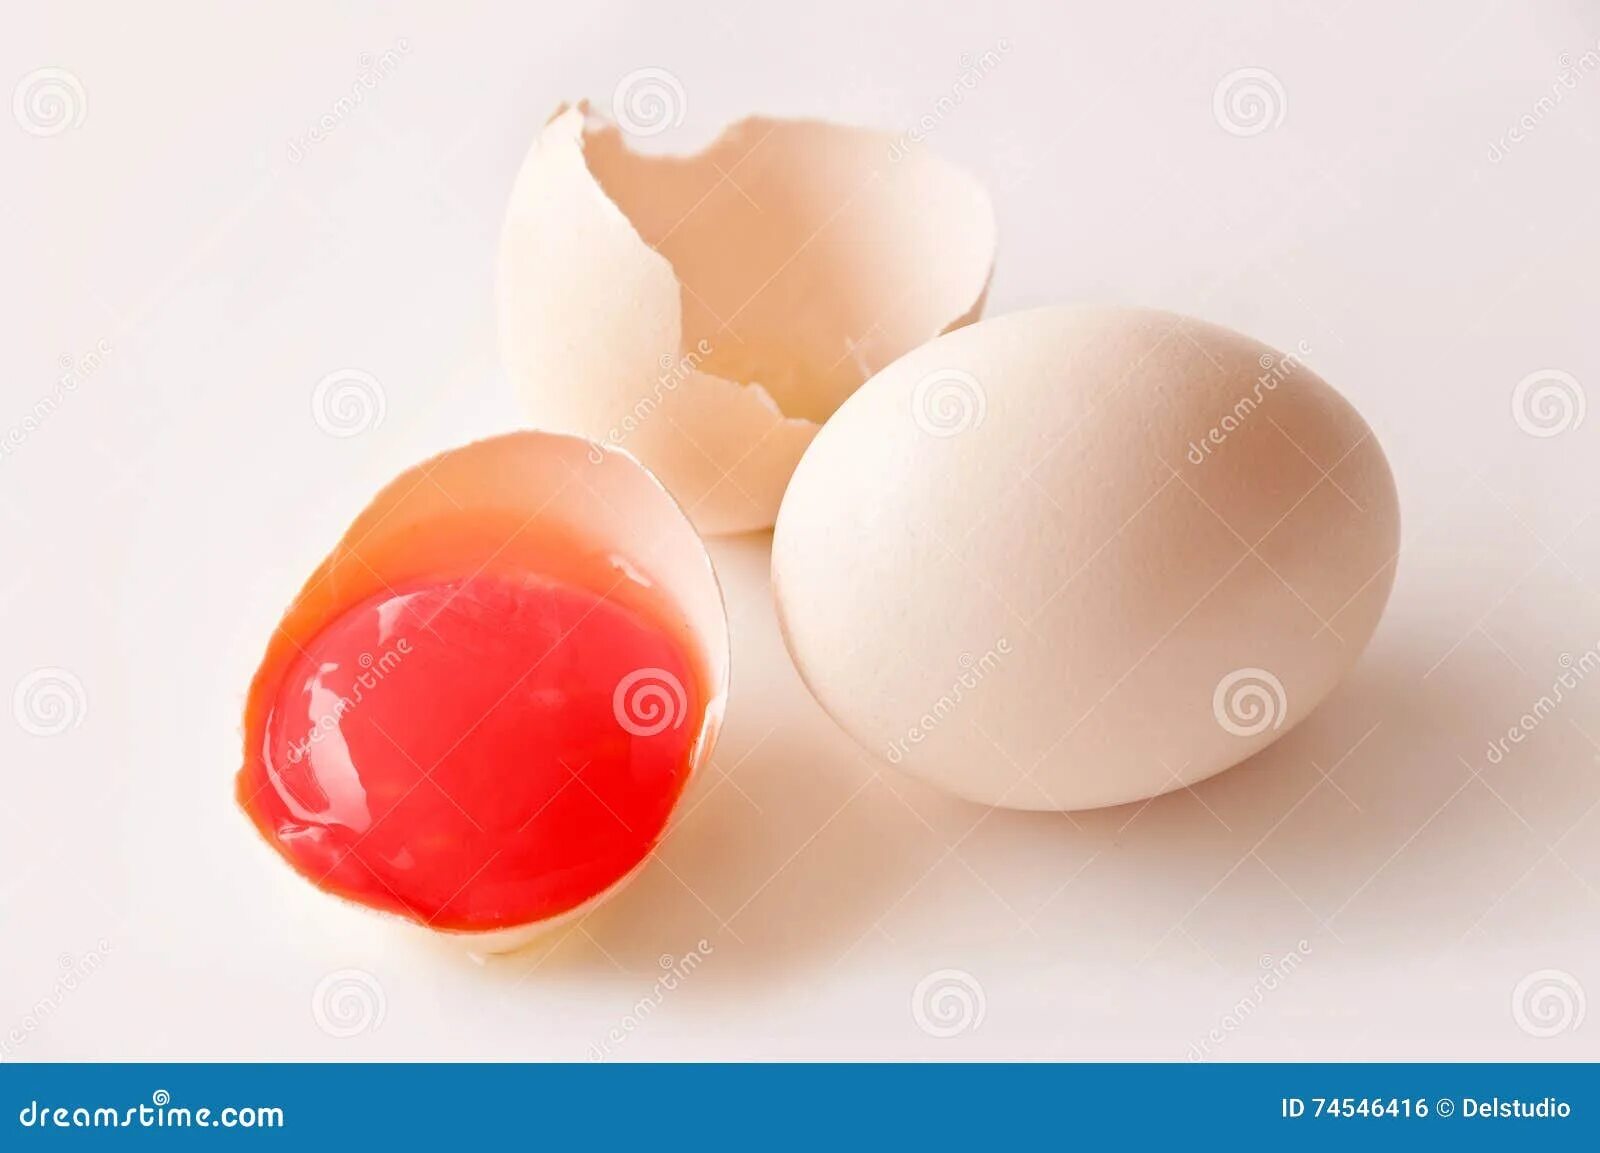 Кровь в яйцах кур. Красный желток куриного яйца.